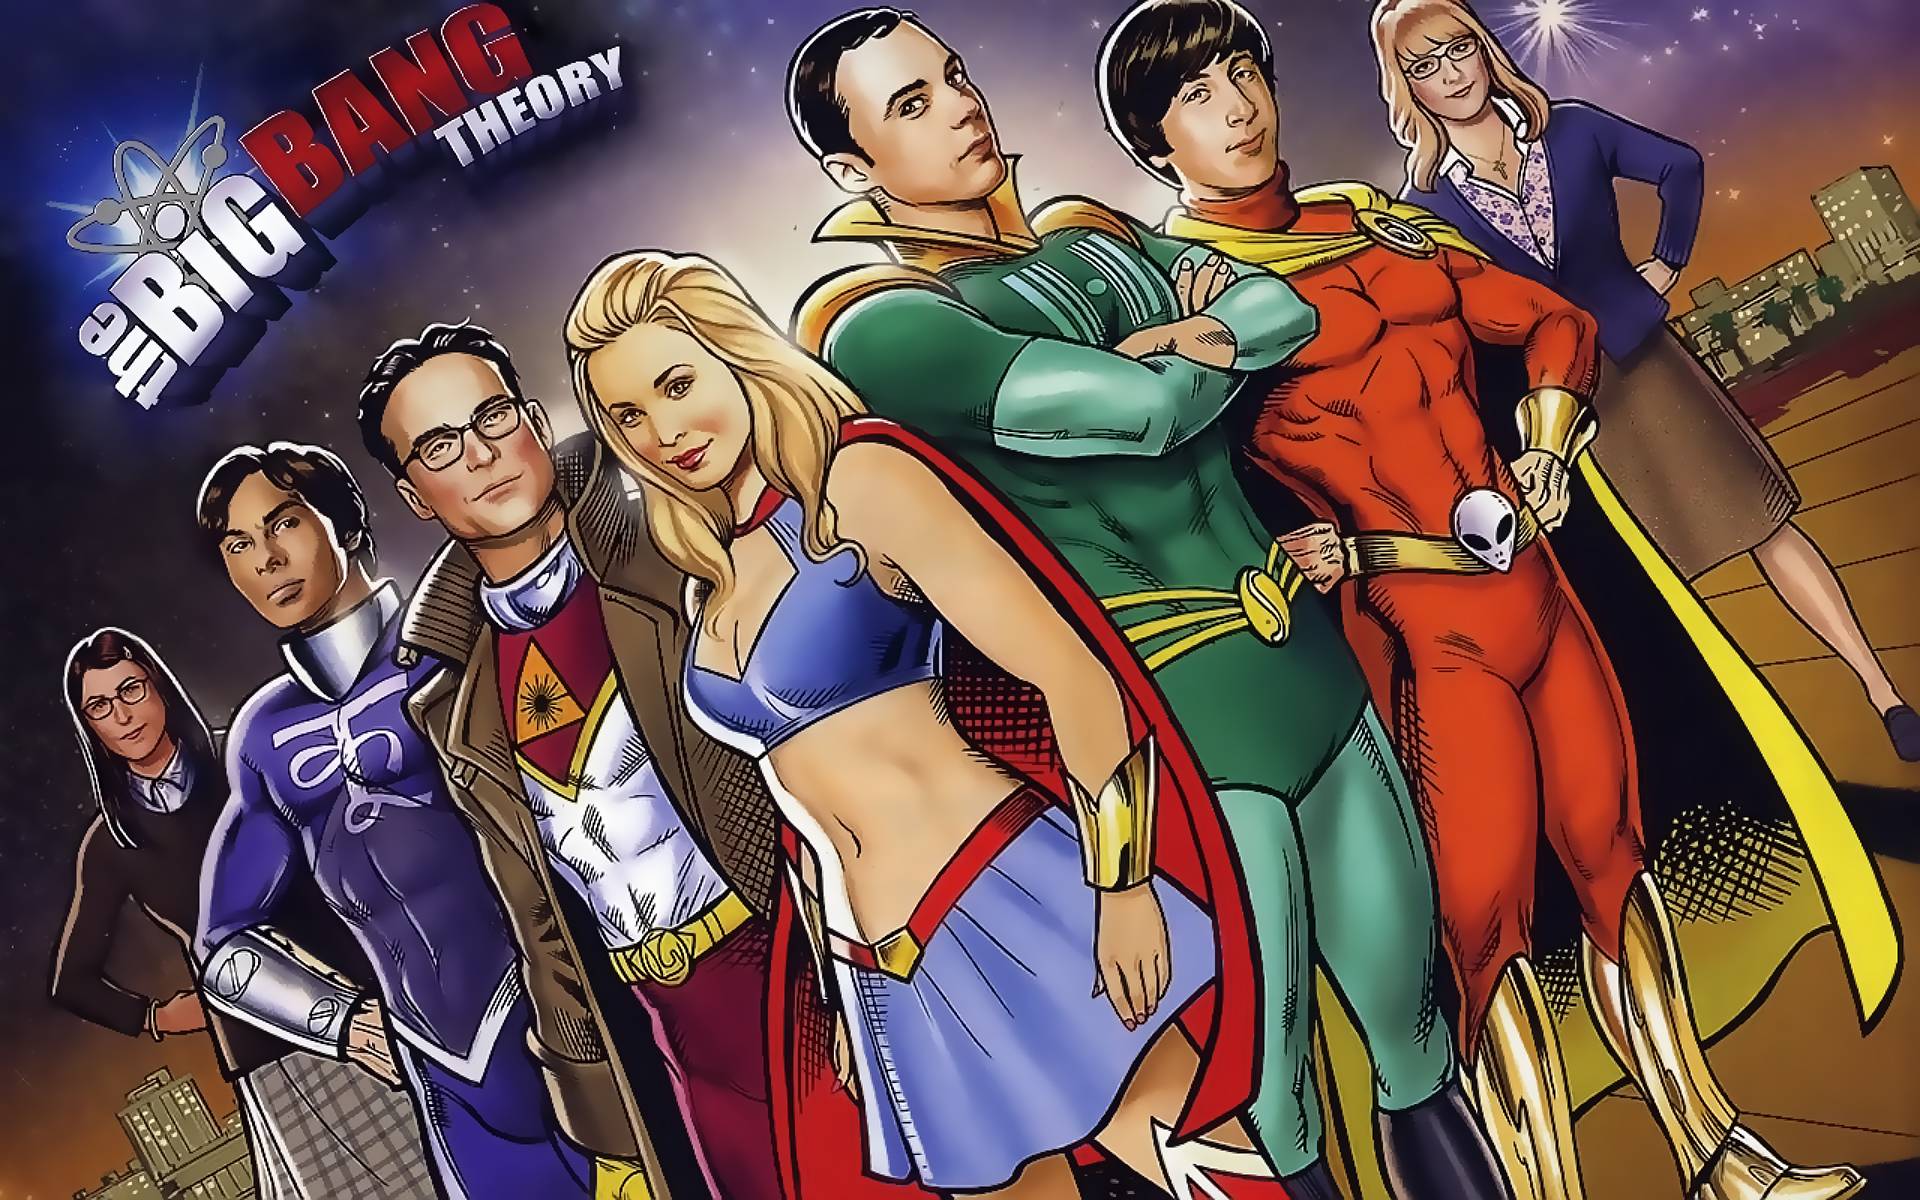 The Big Bang Theory 5 HD wallpaper